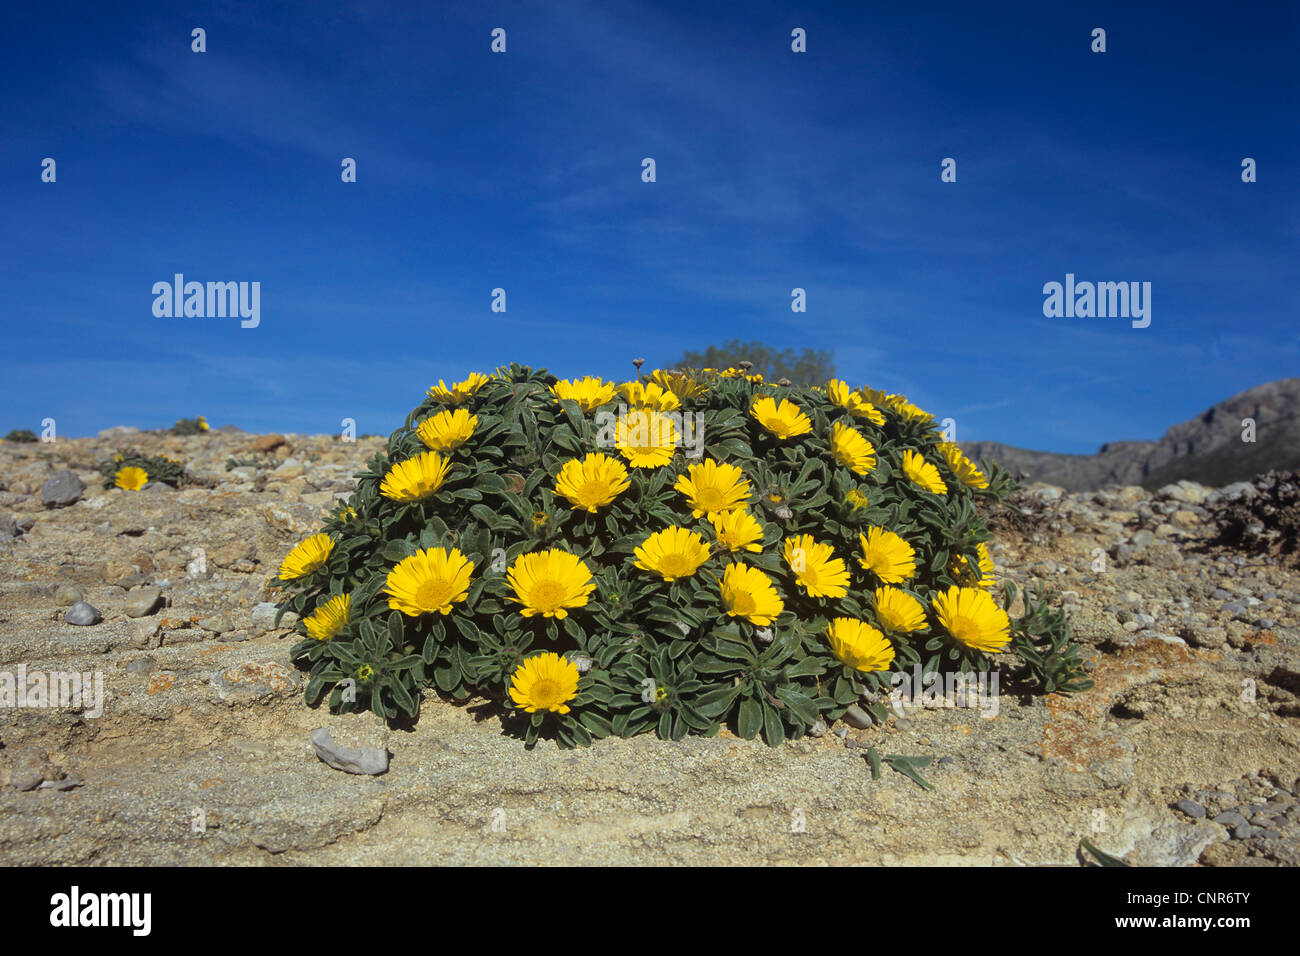 Pièce d'or, plage Méditerranée Daisy (Asteriscus maritimus, Bubonium maritimum), plante à fleurs, Grèce Banque D'Images